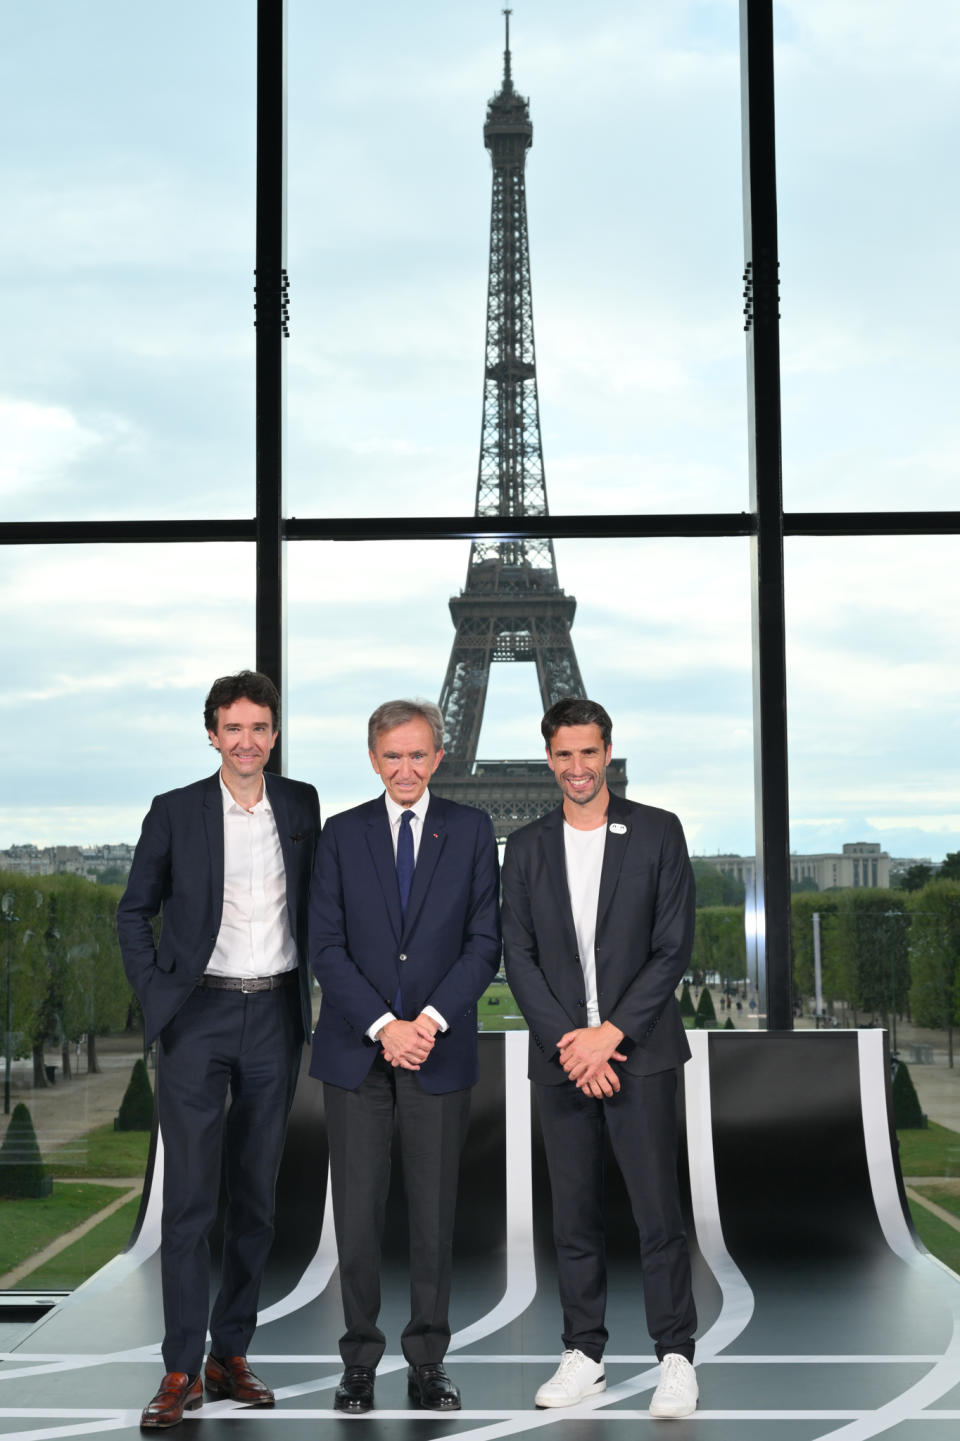 Ο Antoine Arnault, Επικεφαλής Επικοινωνίας, Εικόνας και Περιβάλλοντος της LVMH, ο Bernard Arnault, Πρόεδρος και Διευθύνων Σύμβουλος της LVMH και ο Tony Estanguet, Πρόεδρος της Οργανωτικής Επιτροπής των Ολυμπιακών και Παραολυμπιακών Αγώνων του Παρισιού 2024.